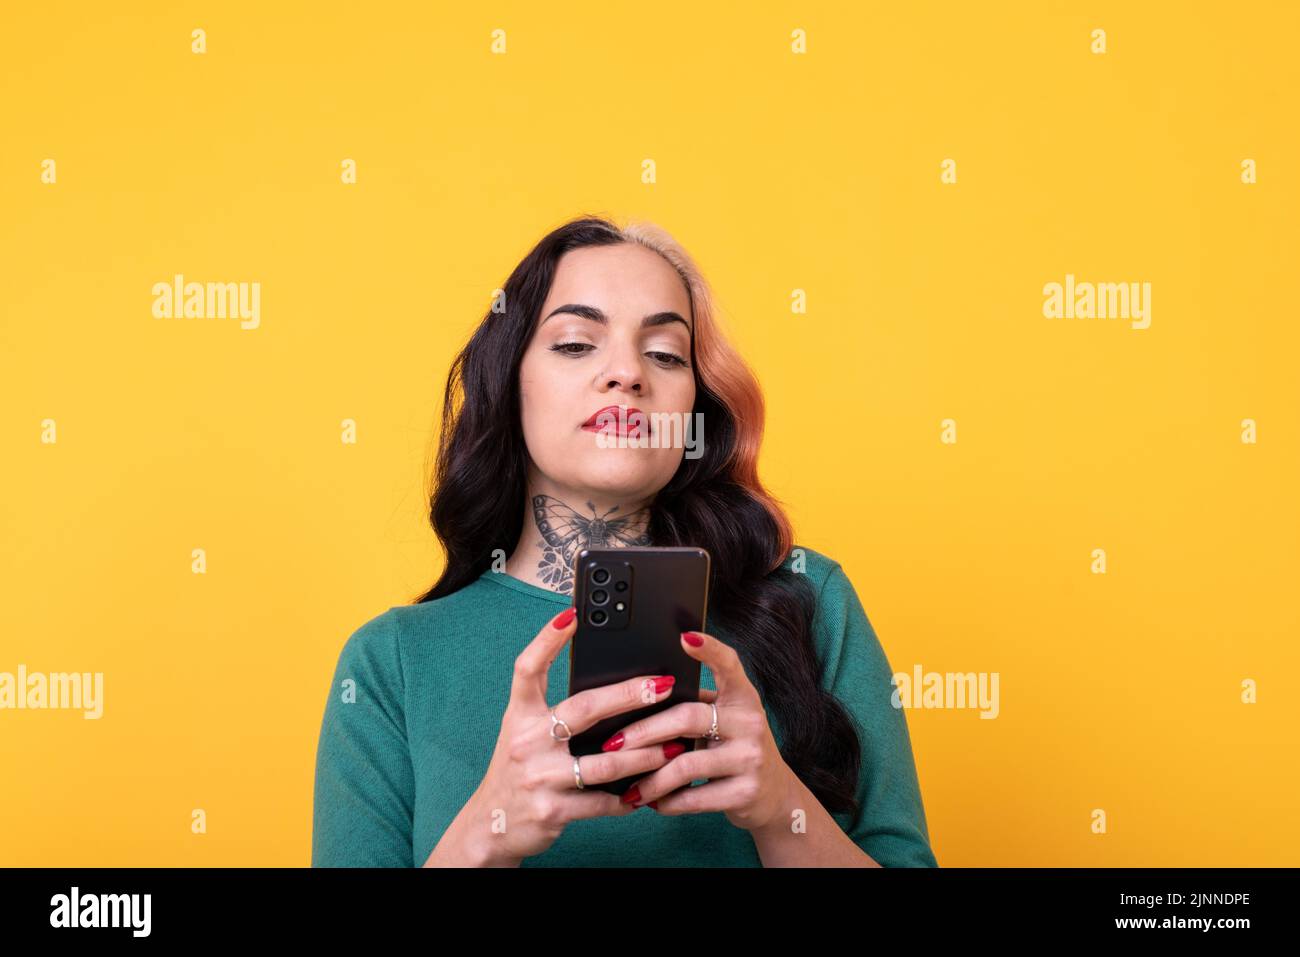 Ritratto di una donna attraente utilizzando smartphone su sfondo giallo. Spazio di copia Foto Stock